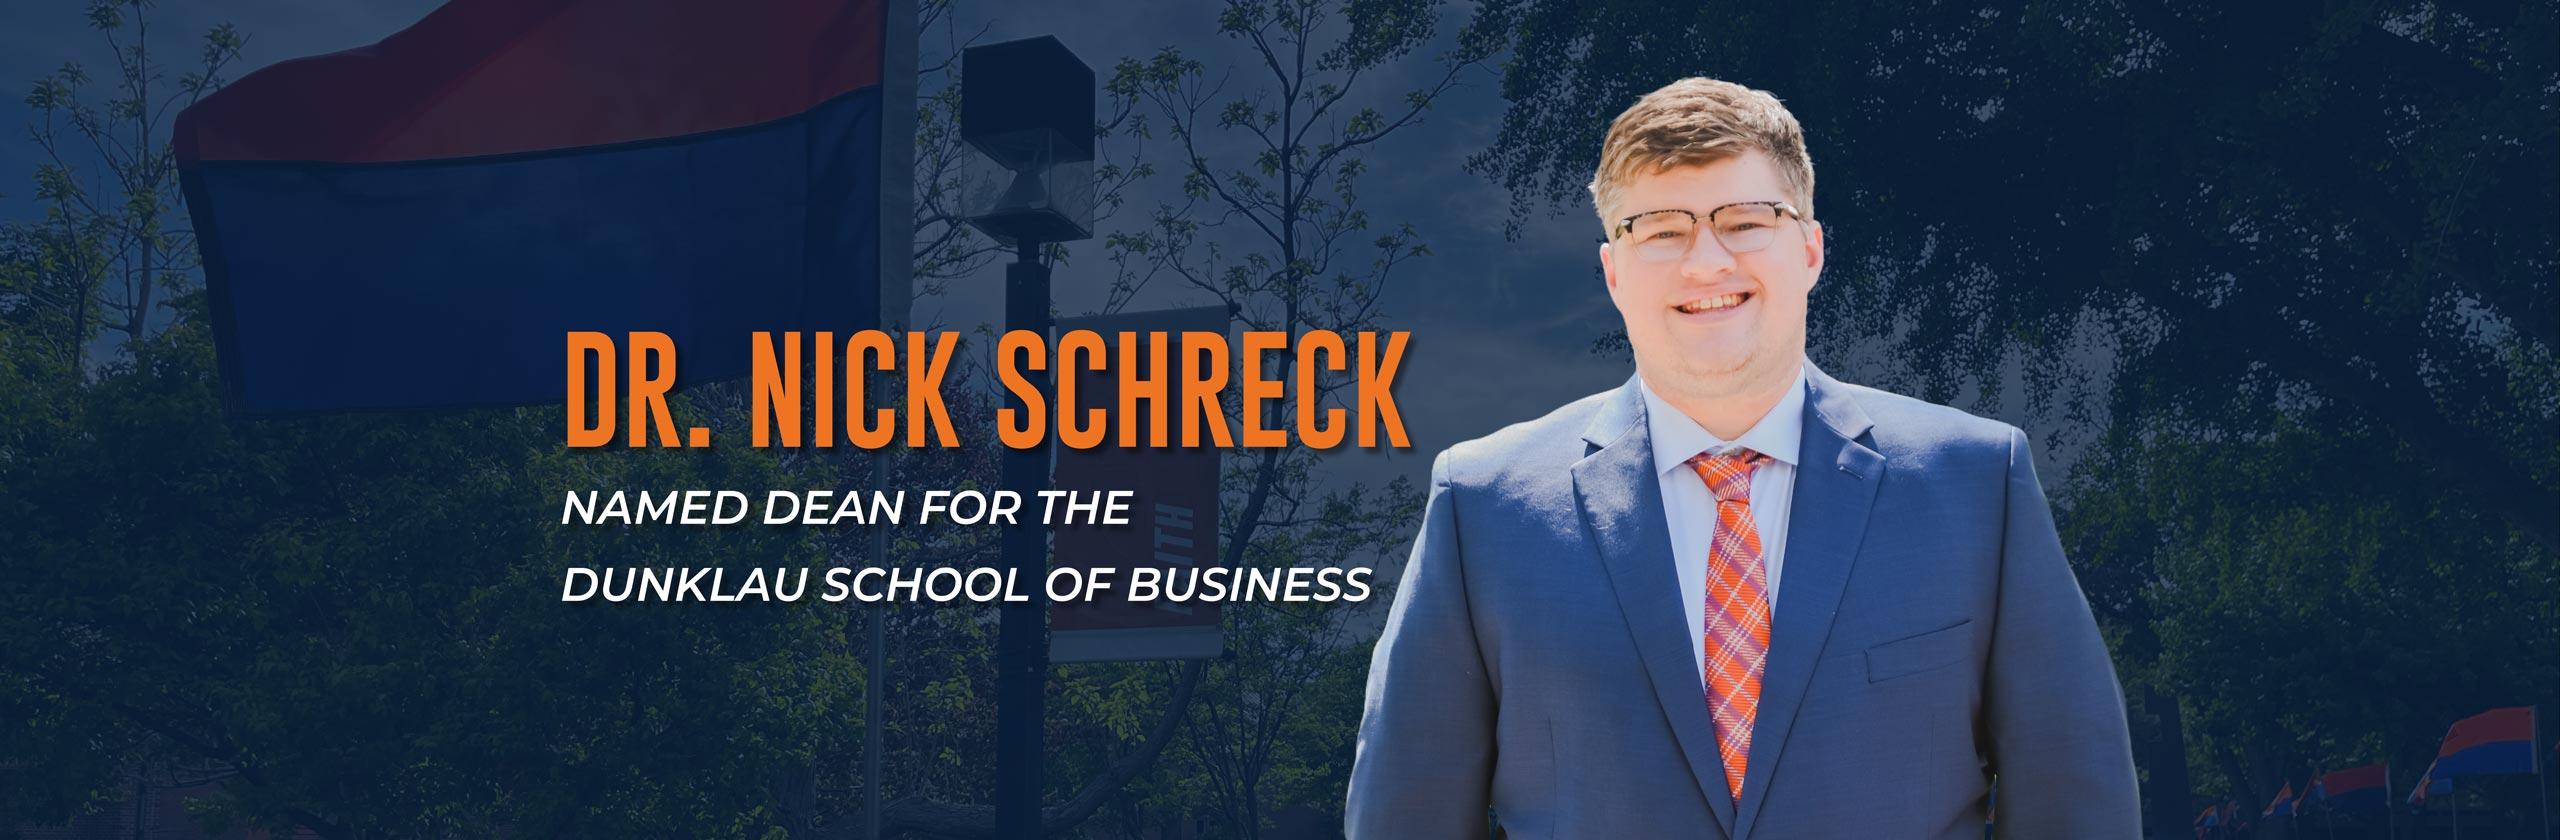 Dr. Nick Schreck Named Dean for Dunklau School of Business – Midland University